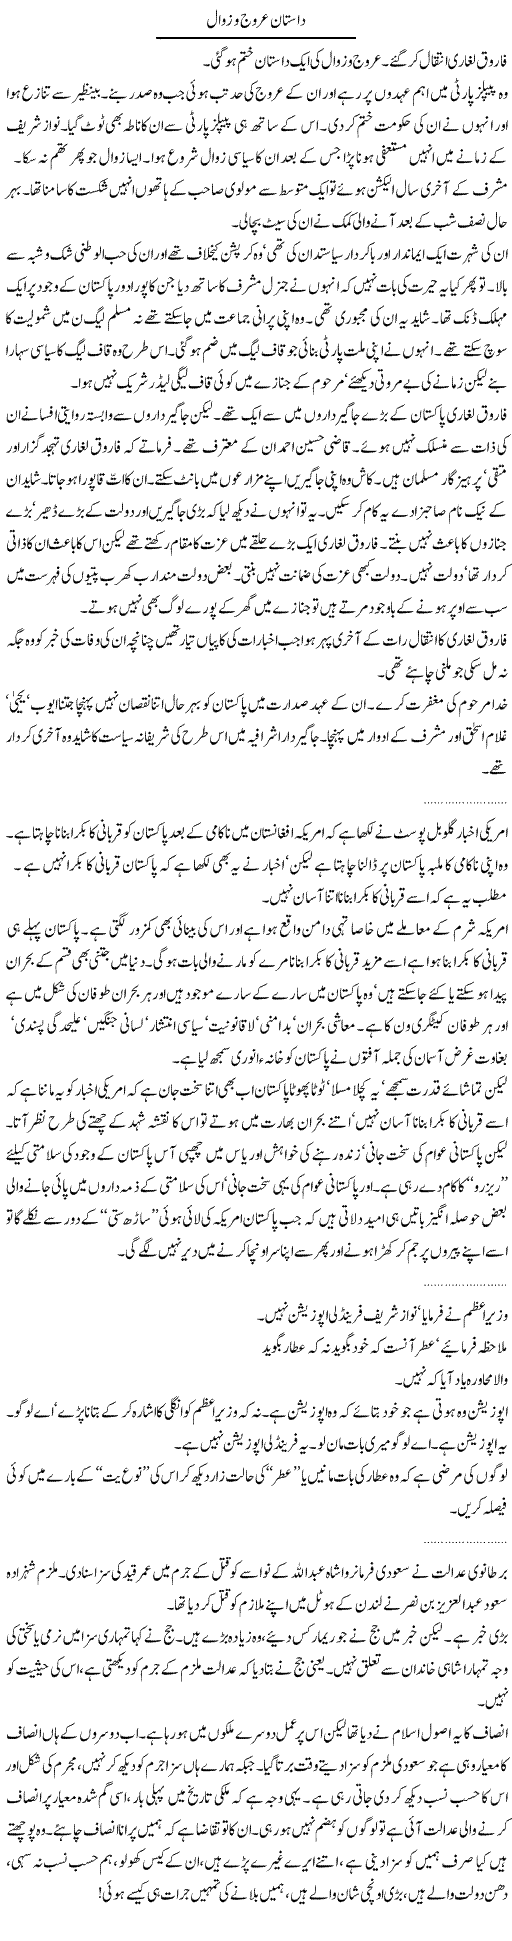 Story of Ups Downs Express Column Abdullah Tariq 22 October 2010